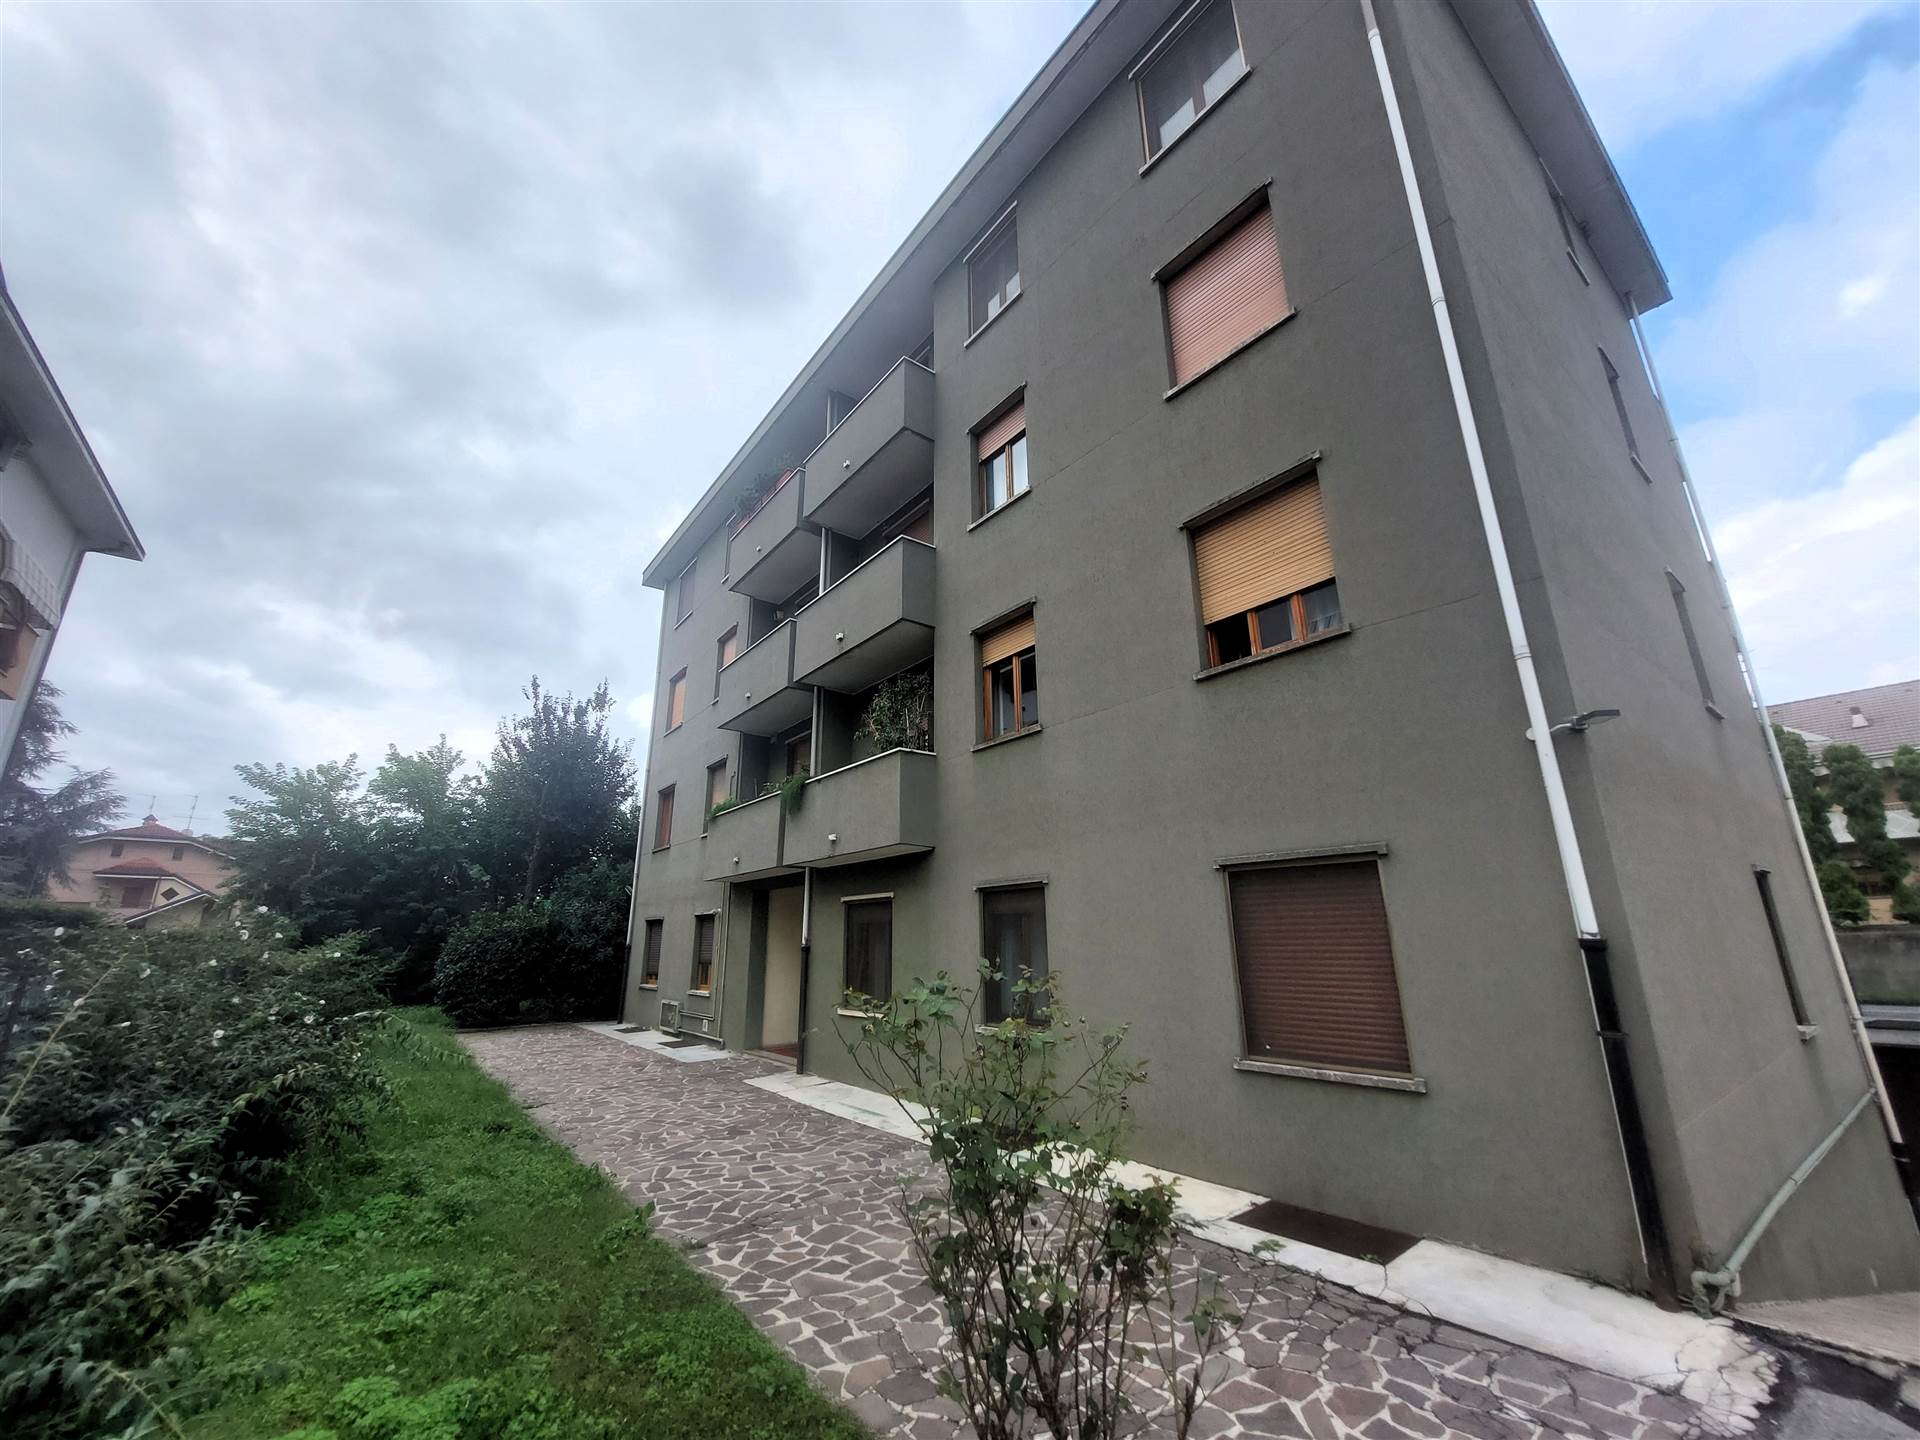 Appartamento in vendita a Senago, 1 locali, zona Località: CENTRO, prezzo € 60.000 | PortaleAgenzieImmobiliari.it